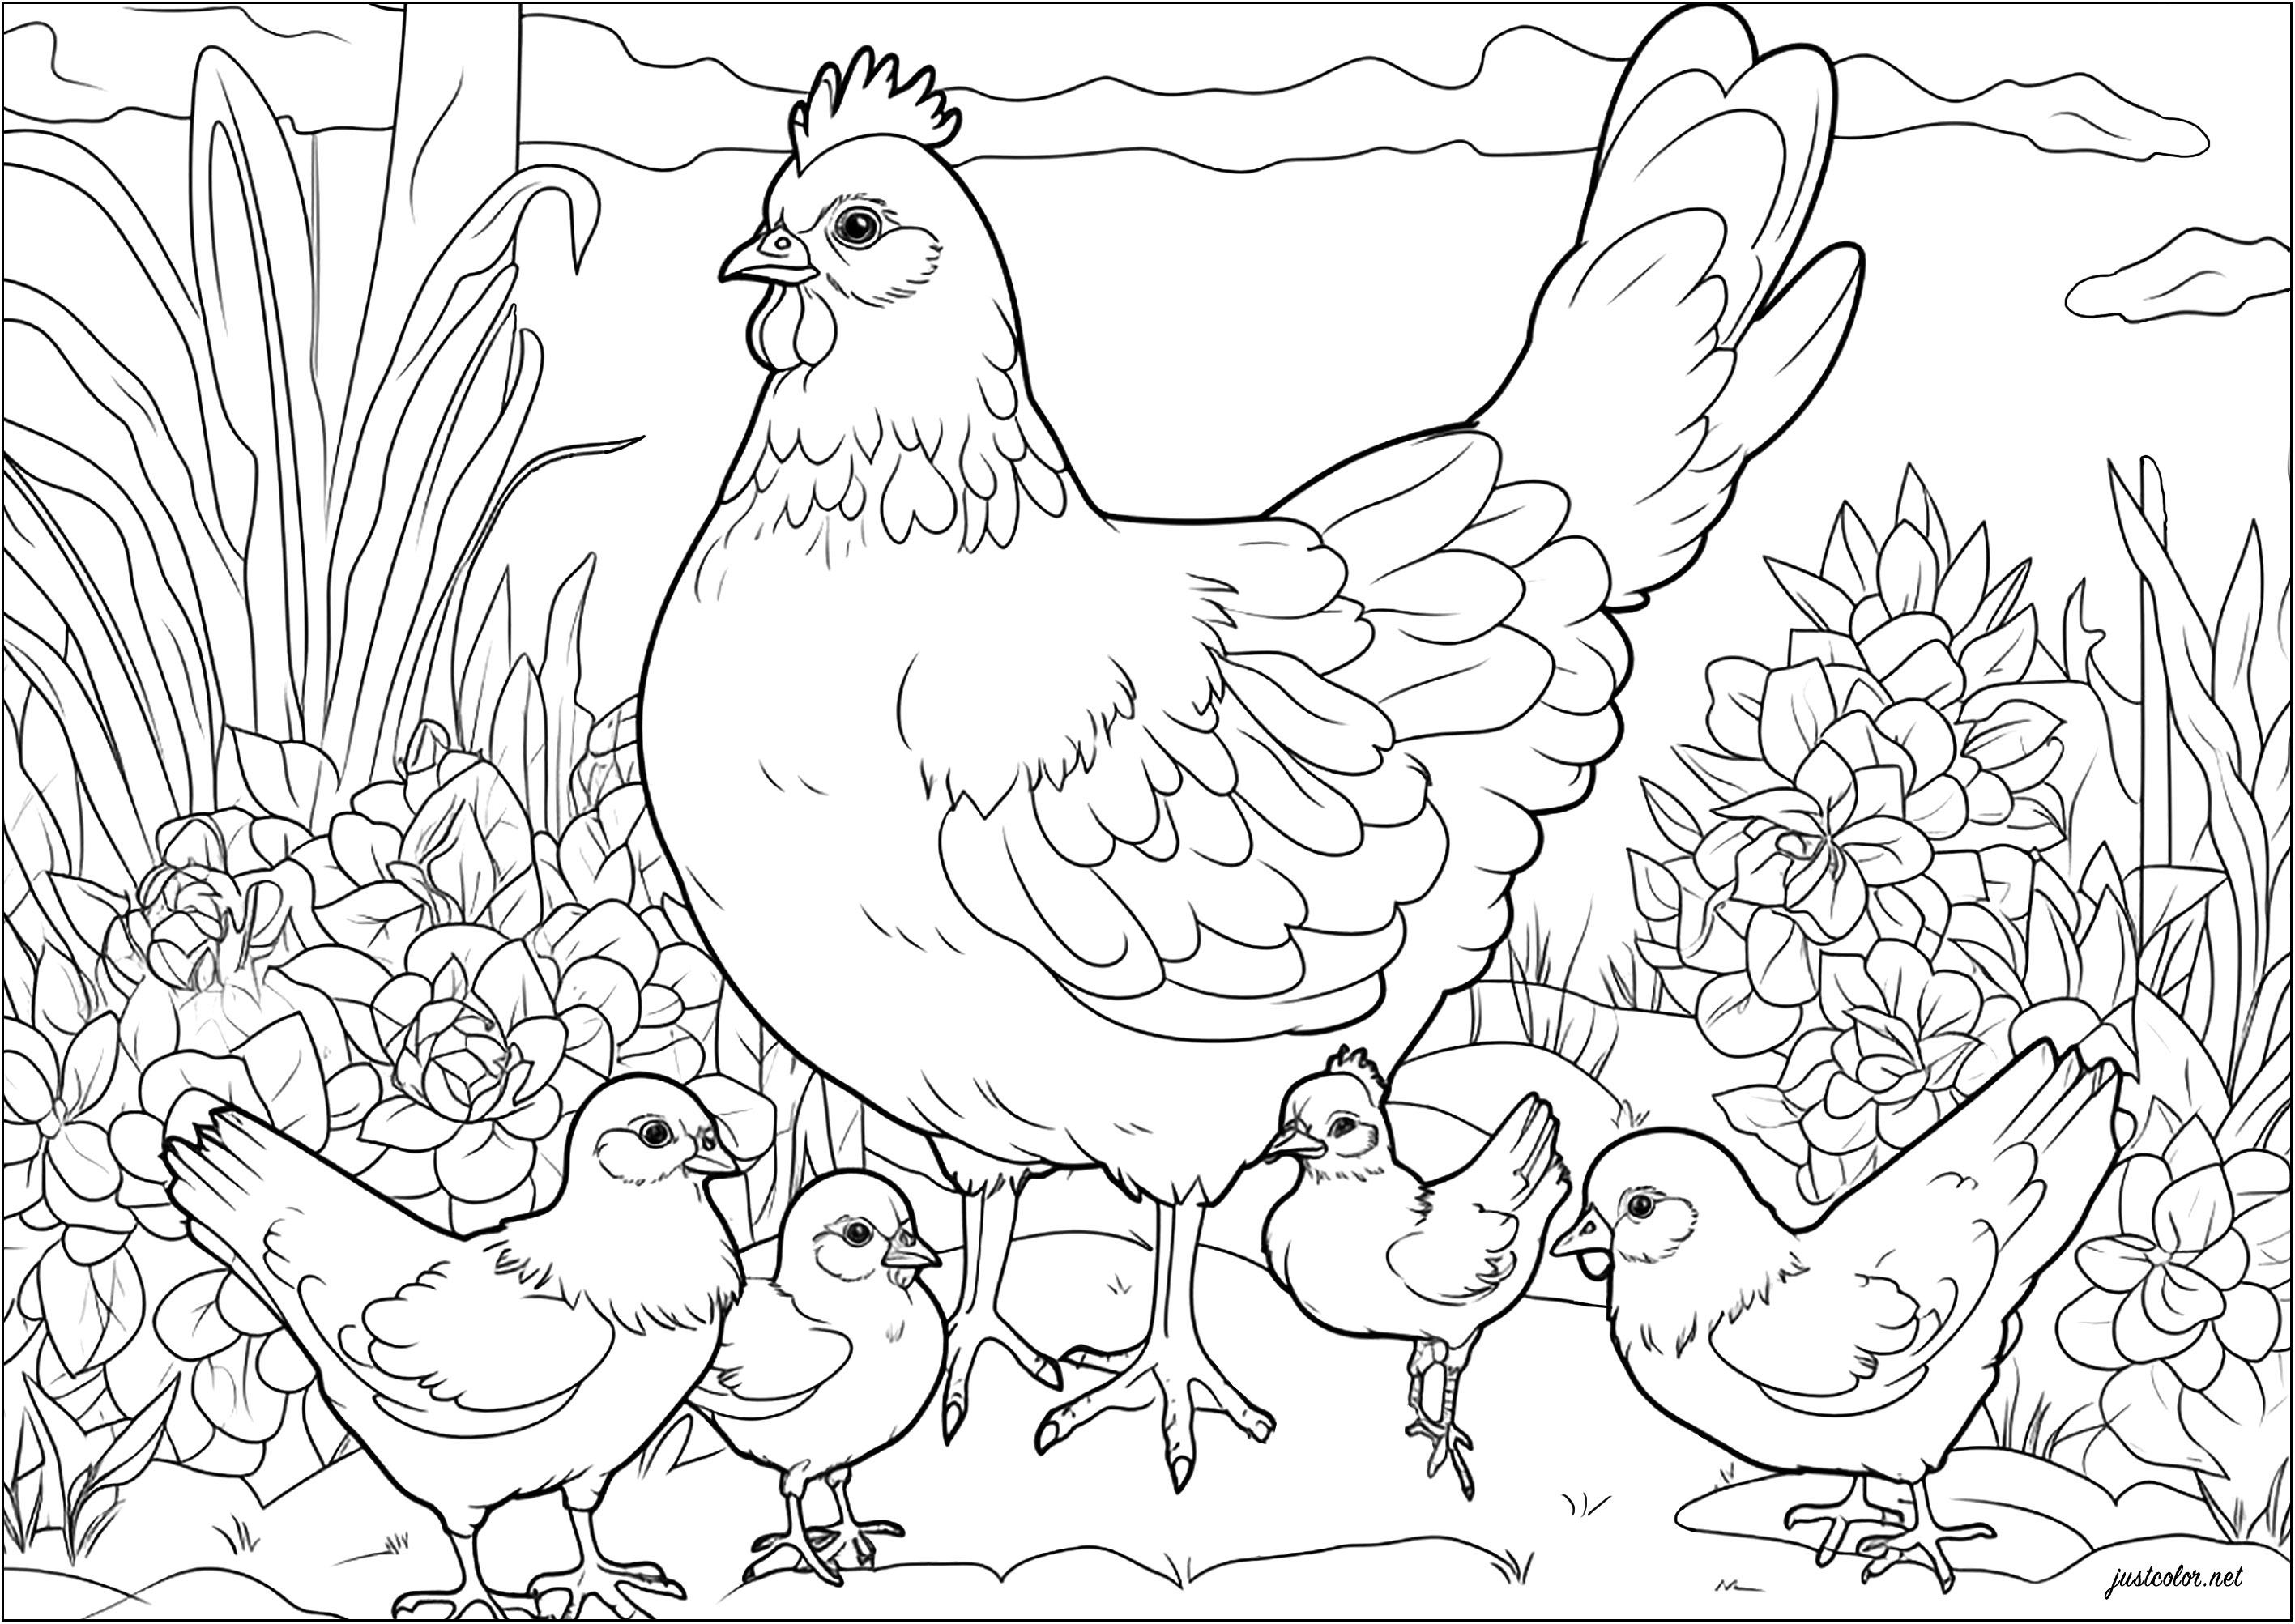 Colorazione di una gallina e dei suoi pulcini. Questa gallina protegge con orgoglio i suoi piccoli.
Bella anche la vegetazione sullo sfondo da colorare.